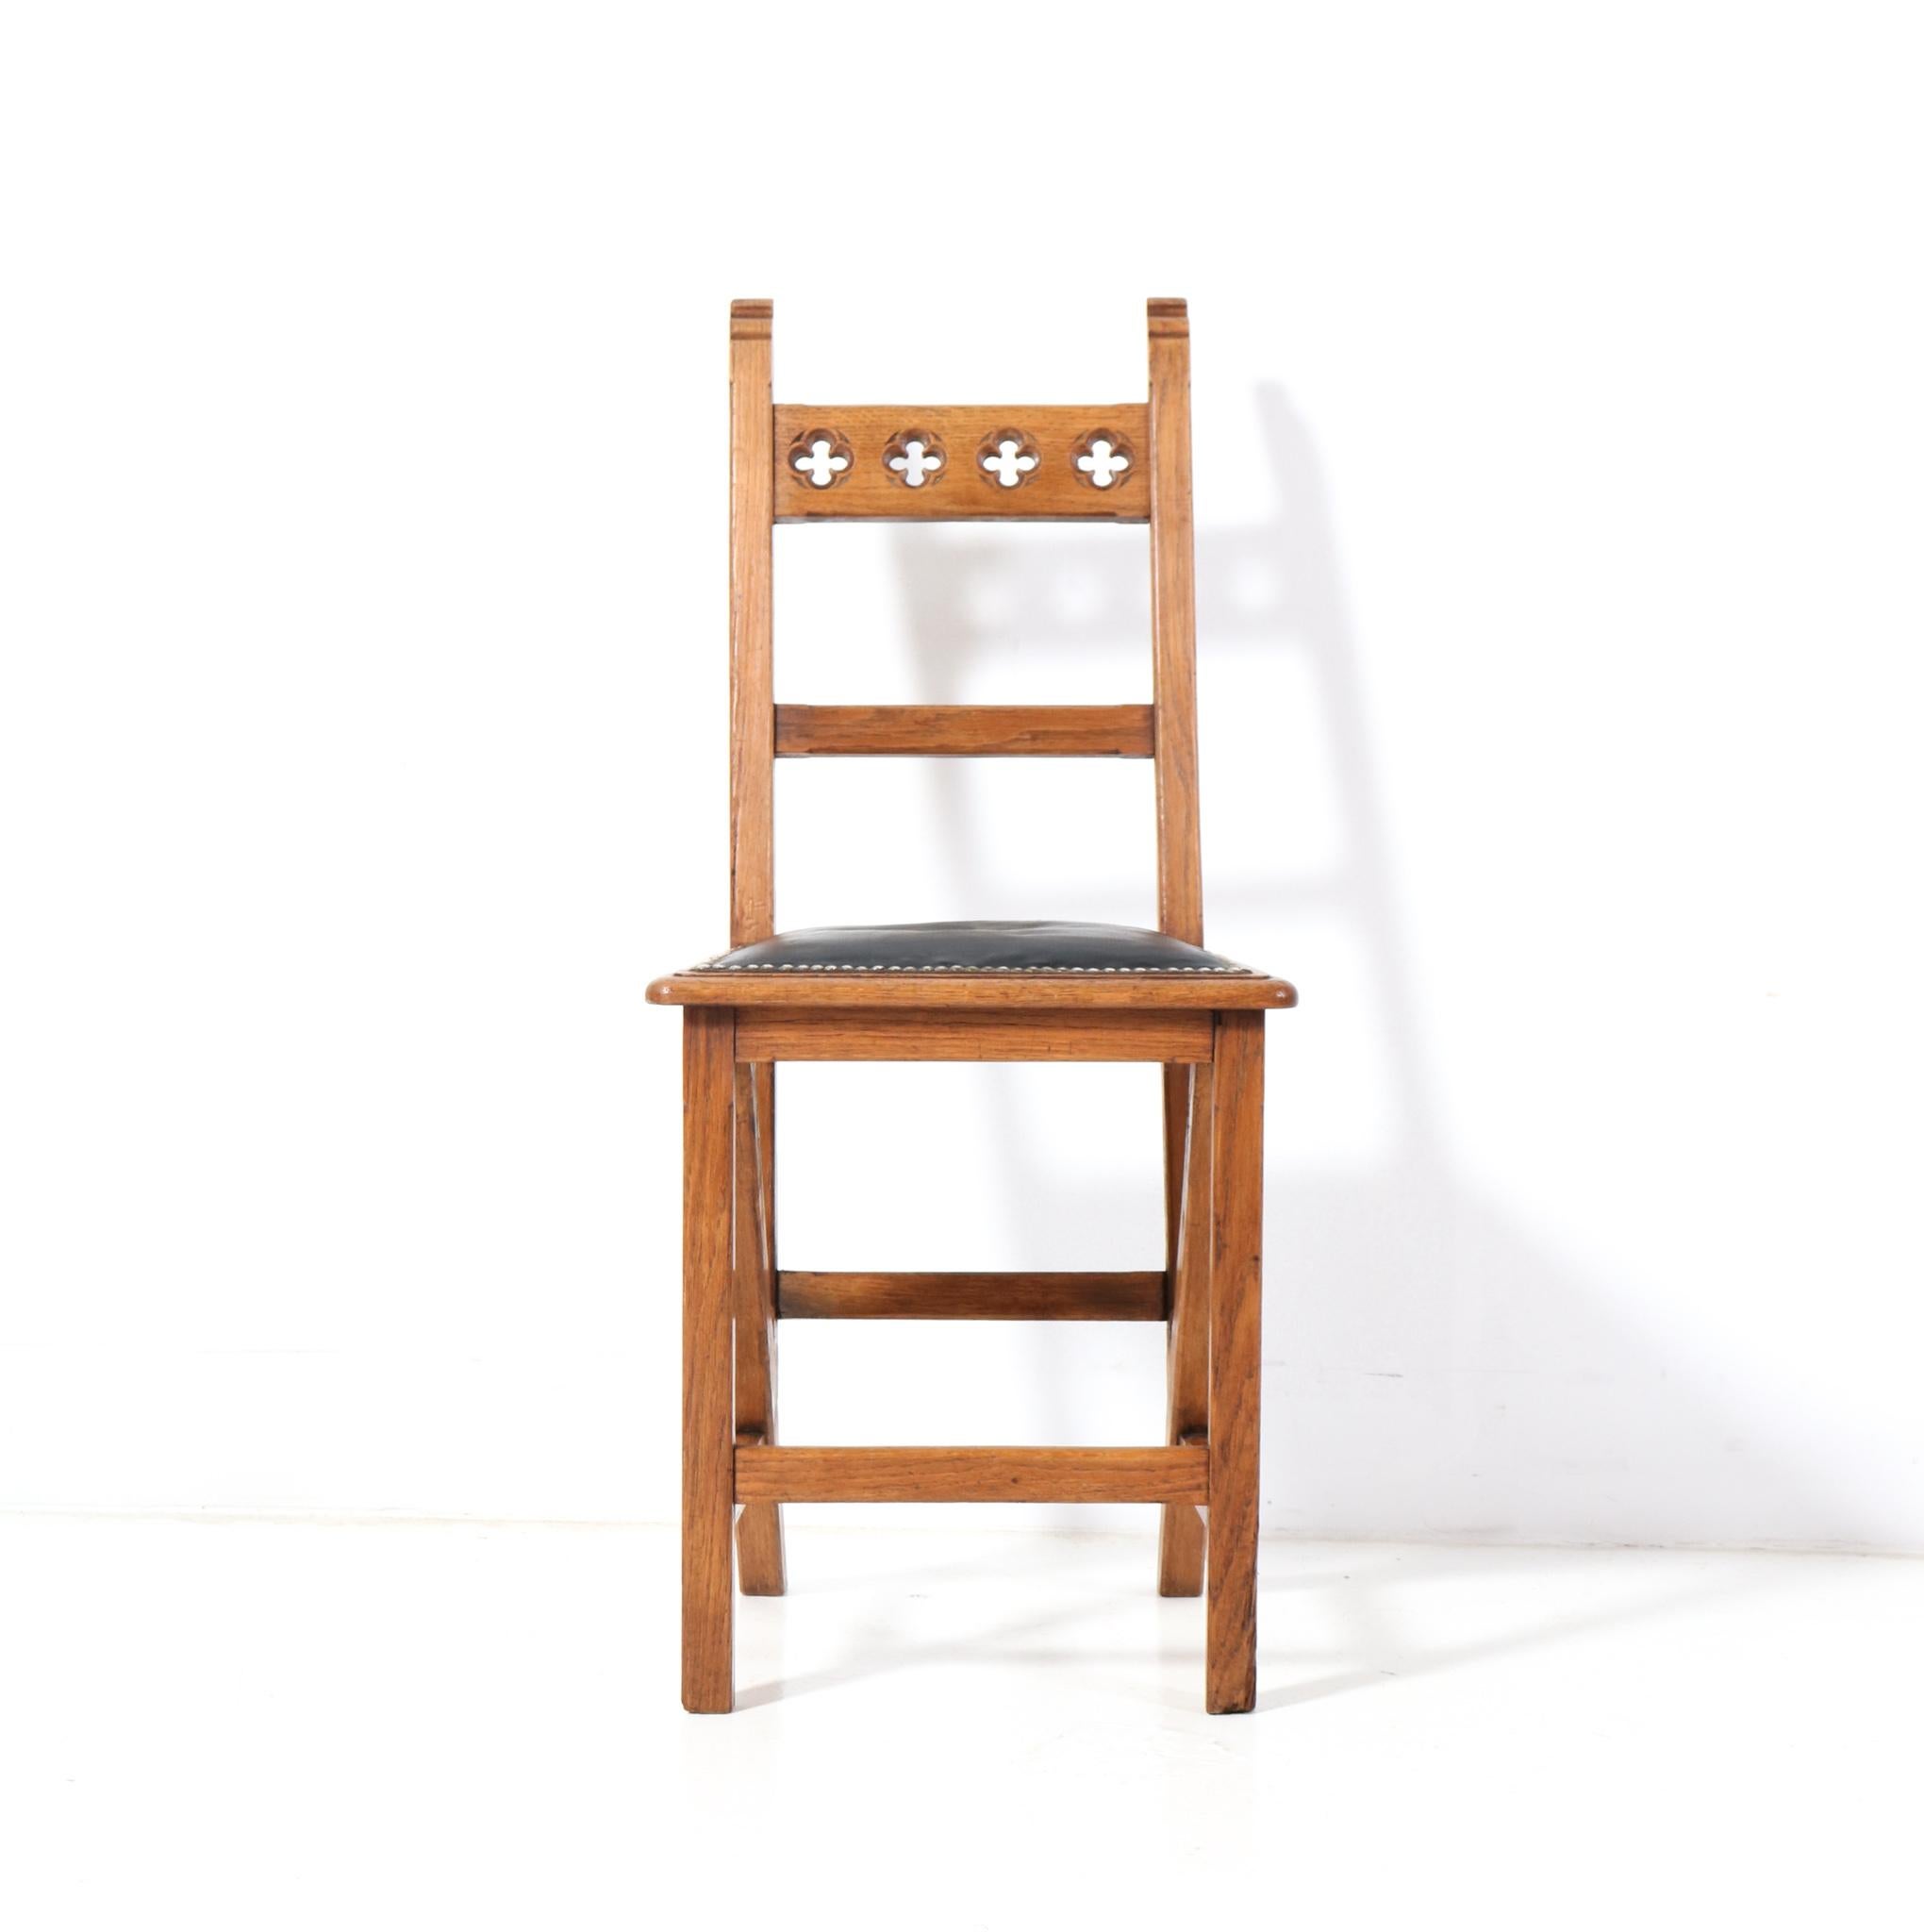 Faux Leather Oak Arts & Crafts Art Nouveau Side Chair by Hendrik Petrus Berlage, 1900s For Sale